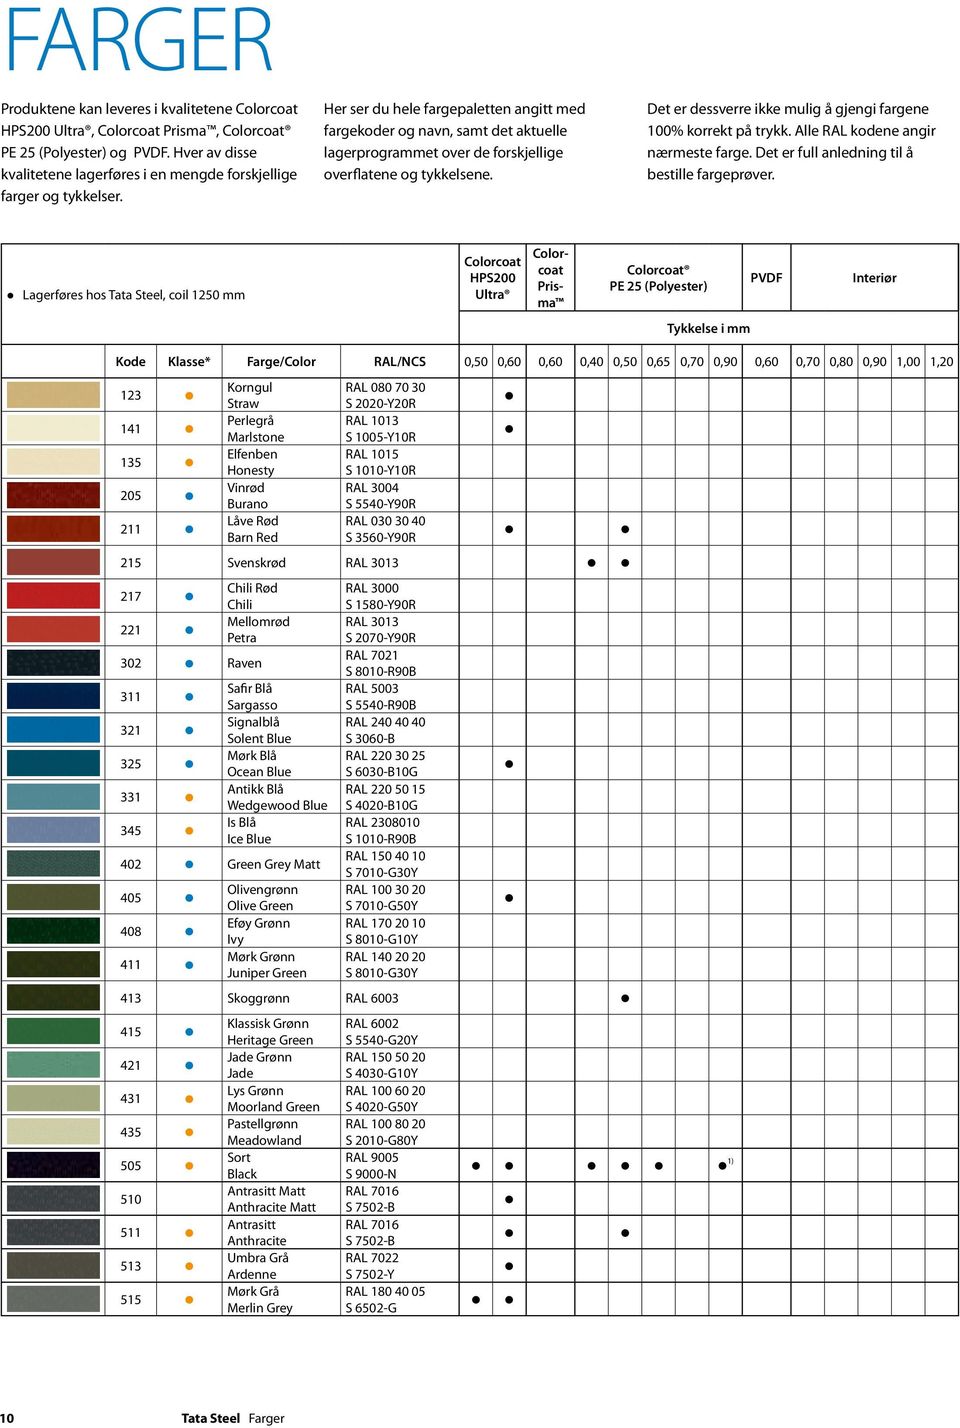 Her ser du hele fargepaletten angitt med fargekoder og navn, samt det aktuelle lagerprogrammet over de forskjellige overflatene og tykkelsene.